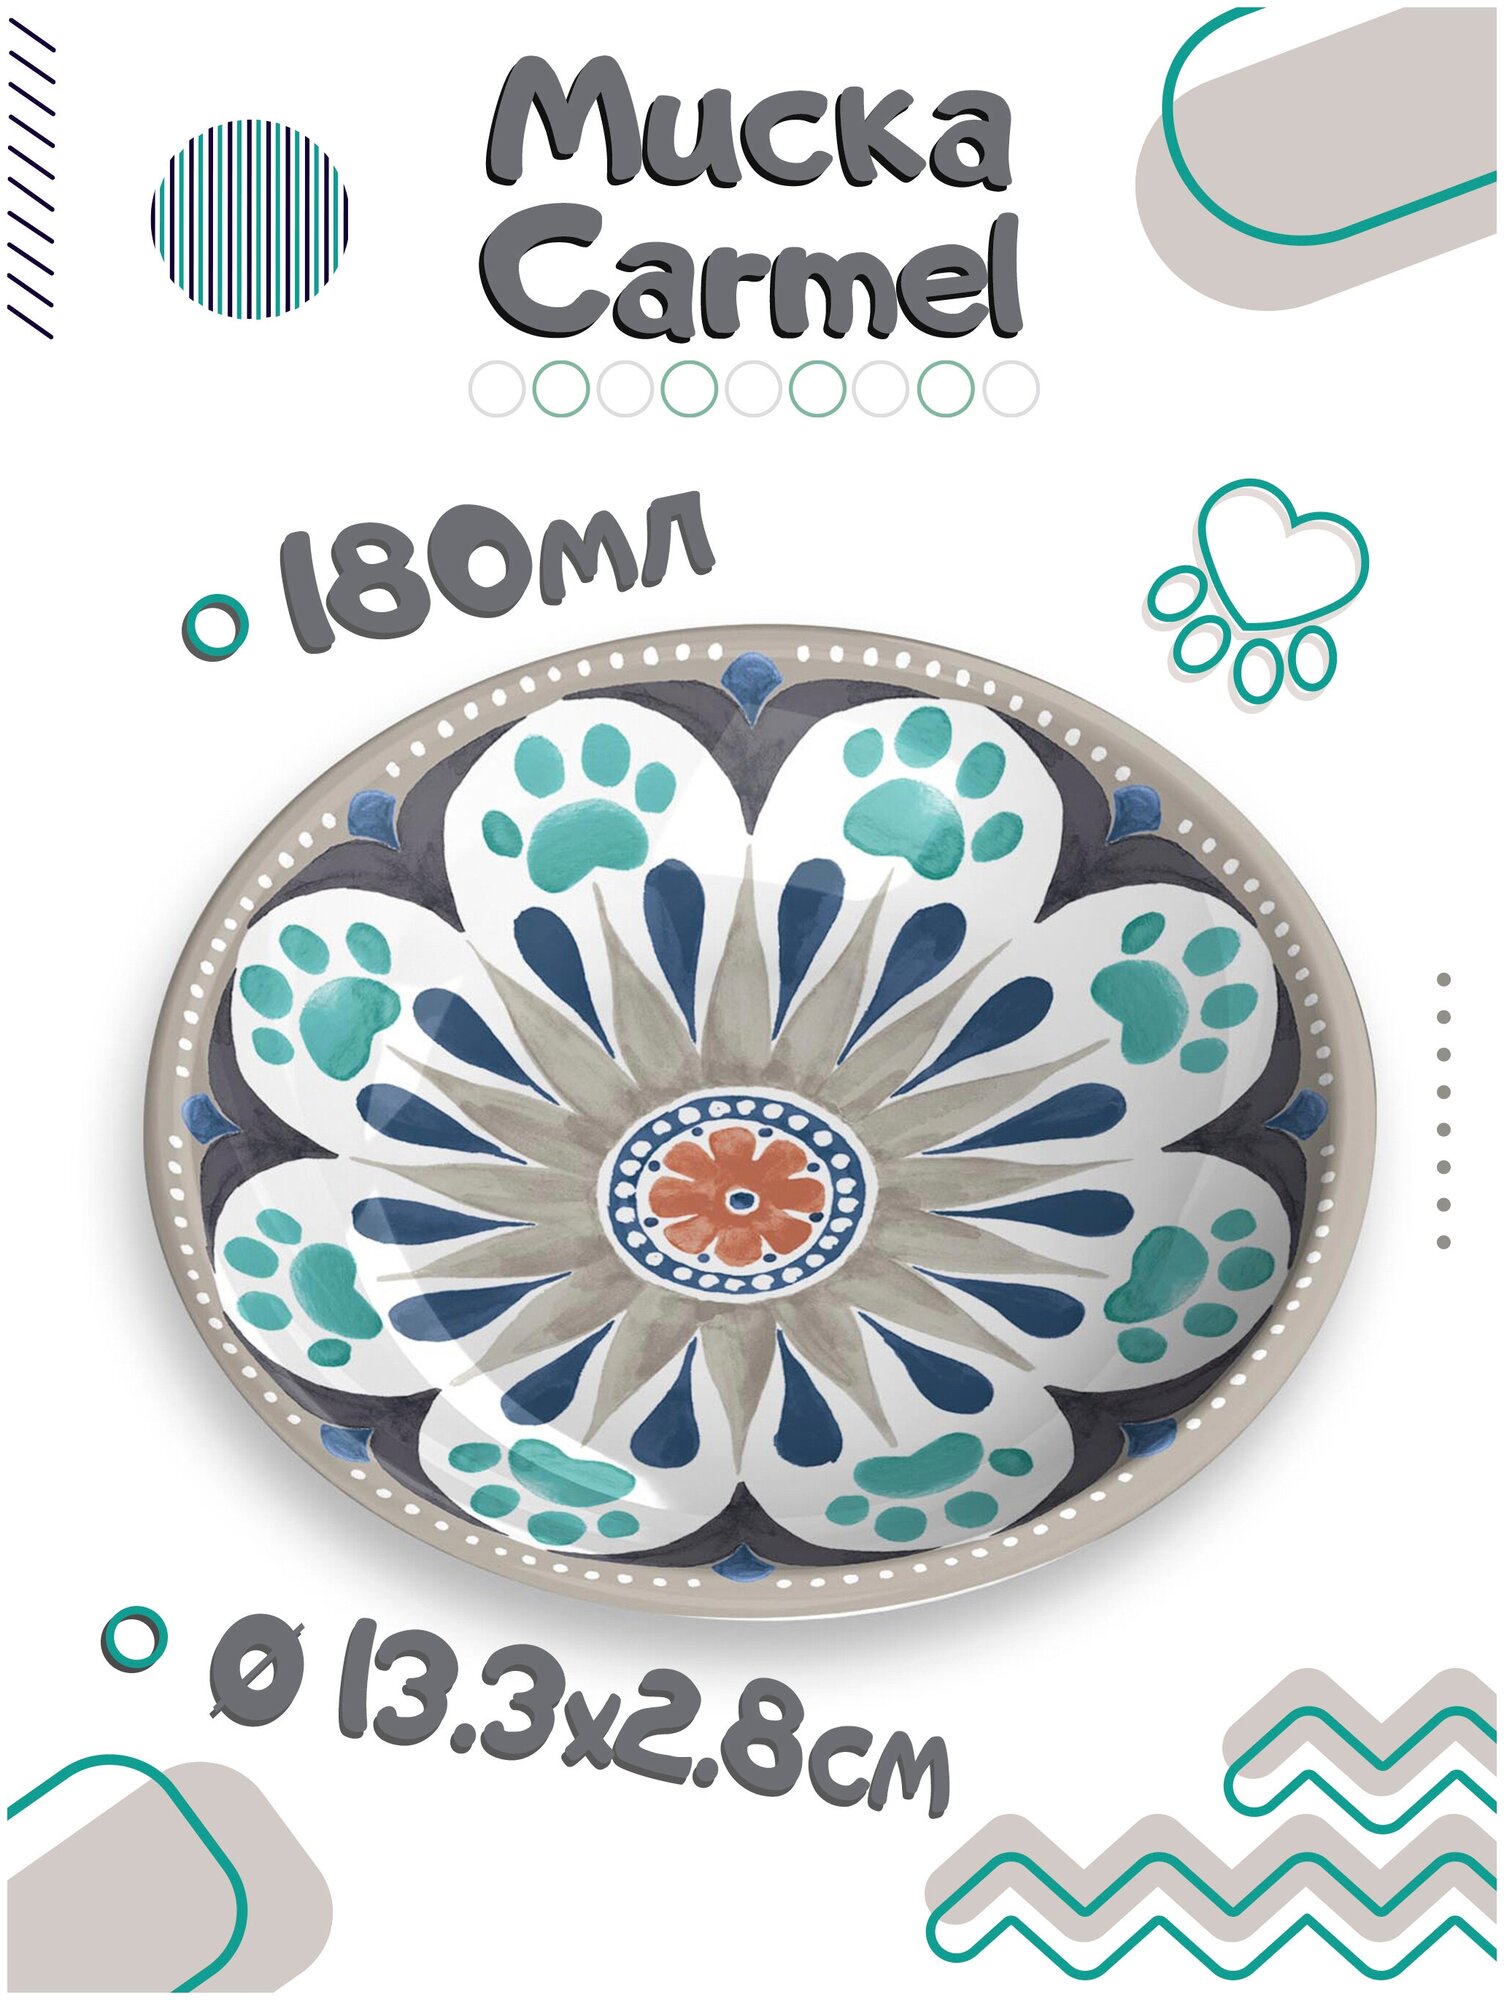 Миска для кошек TARHONG "Carmel", бежевая с рисунком, 13х13х2.8см (180мл)(США)